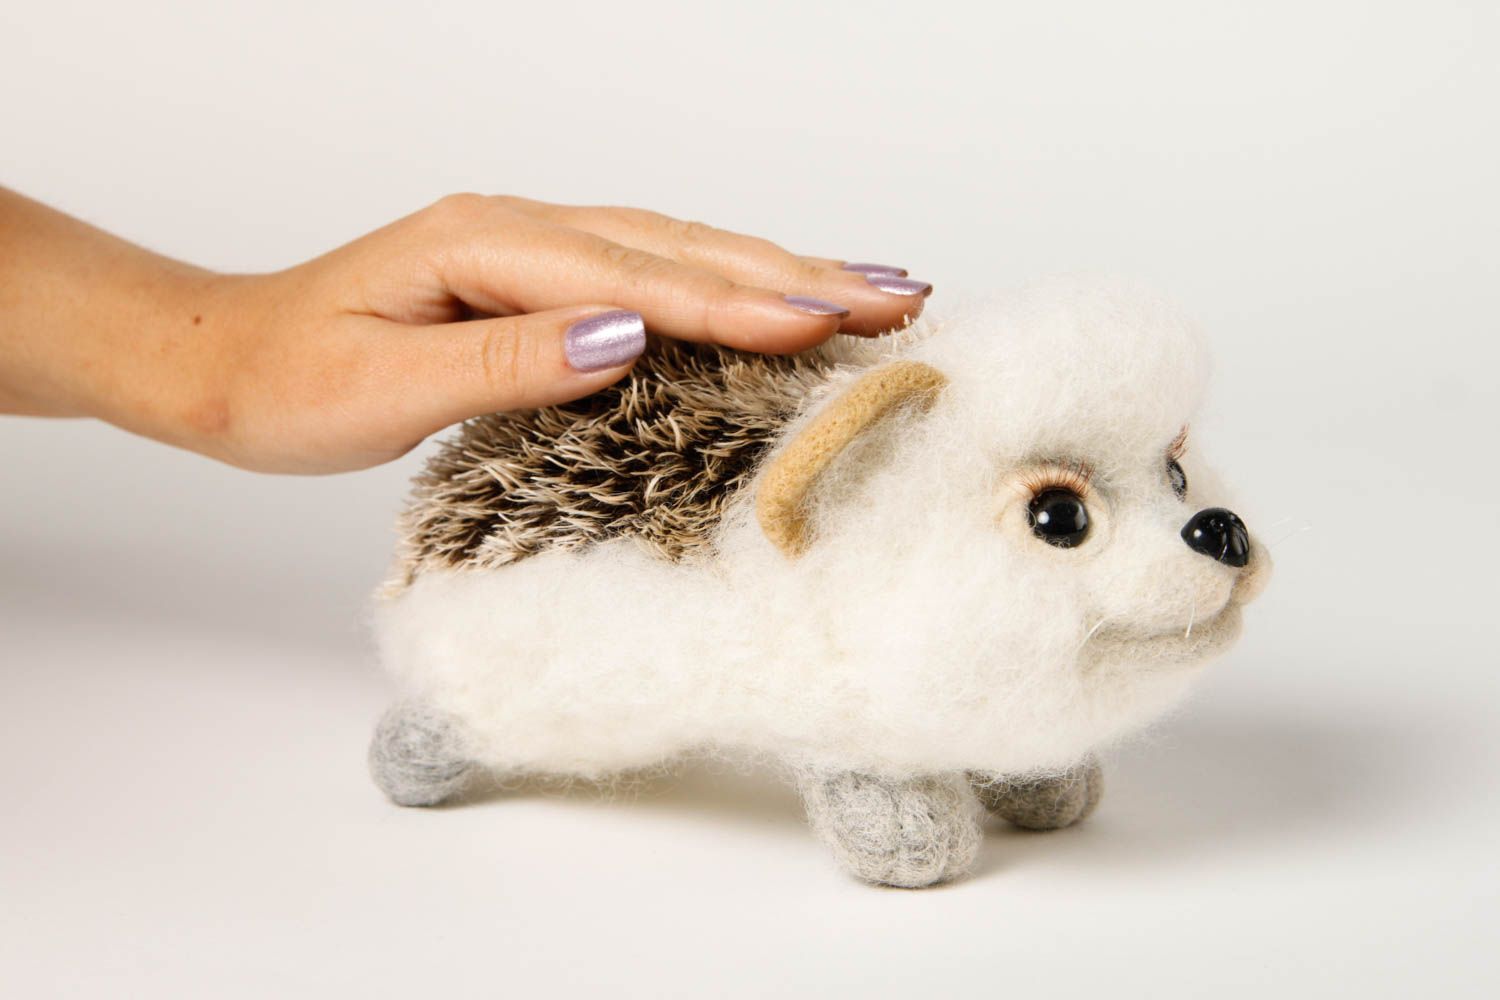 Handmade kleines Spielzeug Geschenk Idee Kuscheltier Igel Filz Tier aus Wolle foto 2